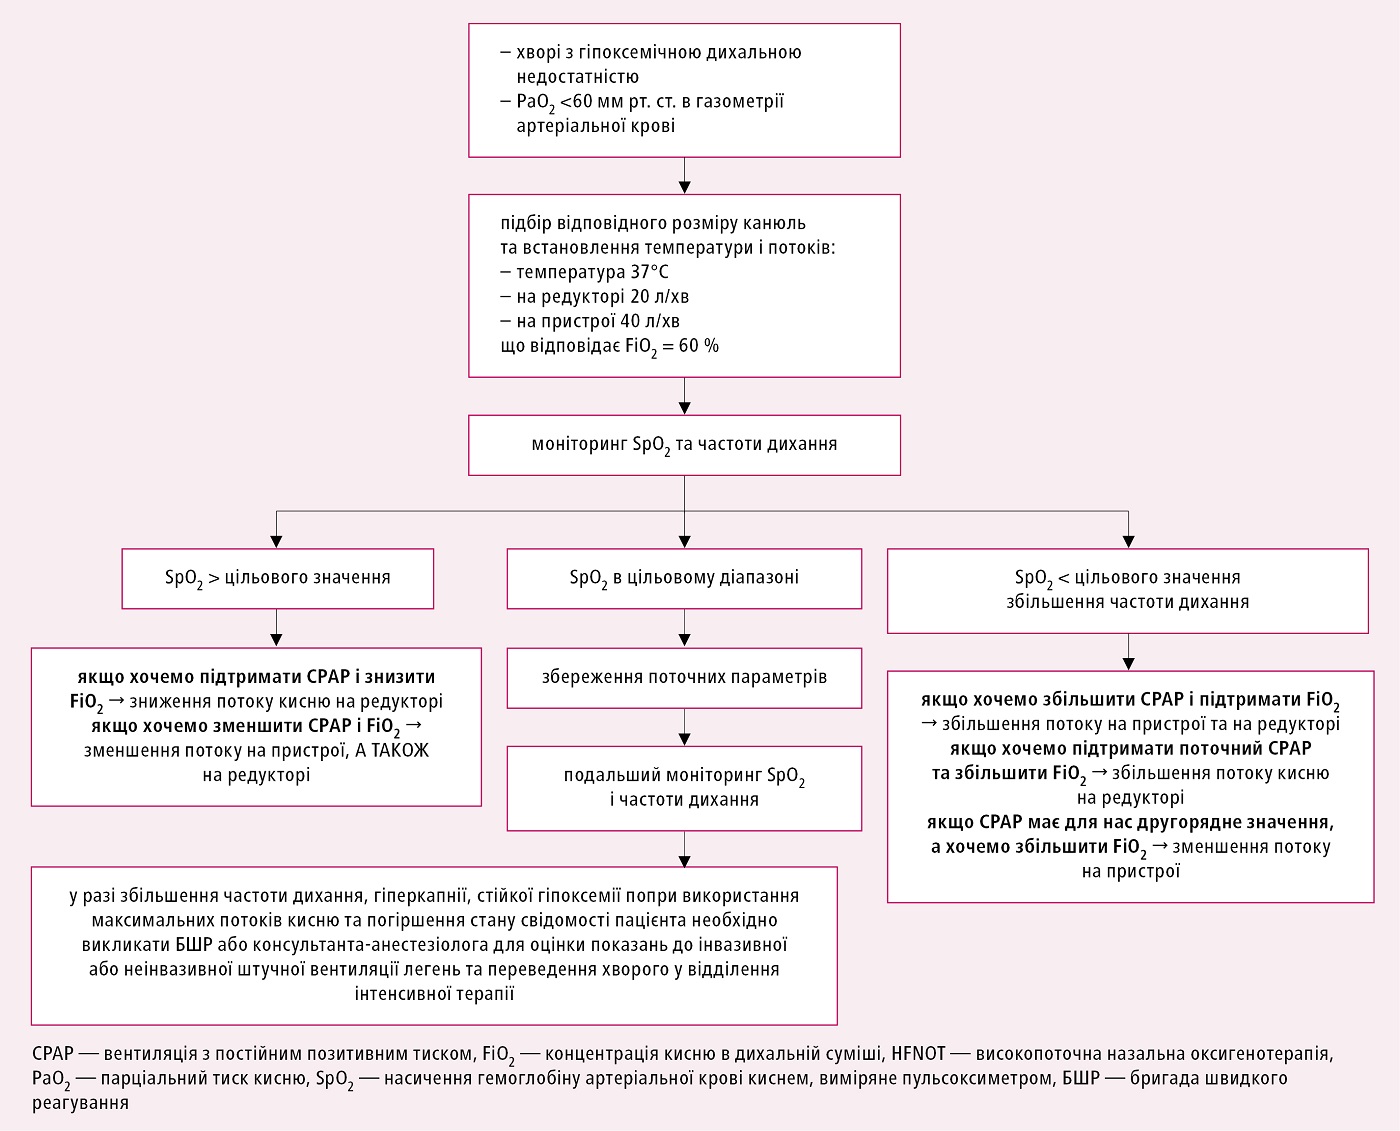 Схема застосування високопоточної назальної оксигенотерапії